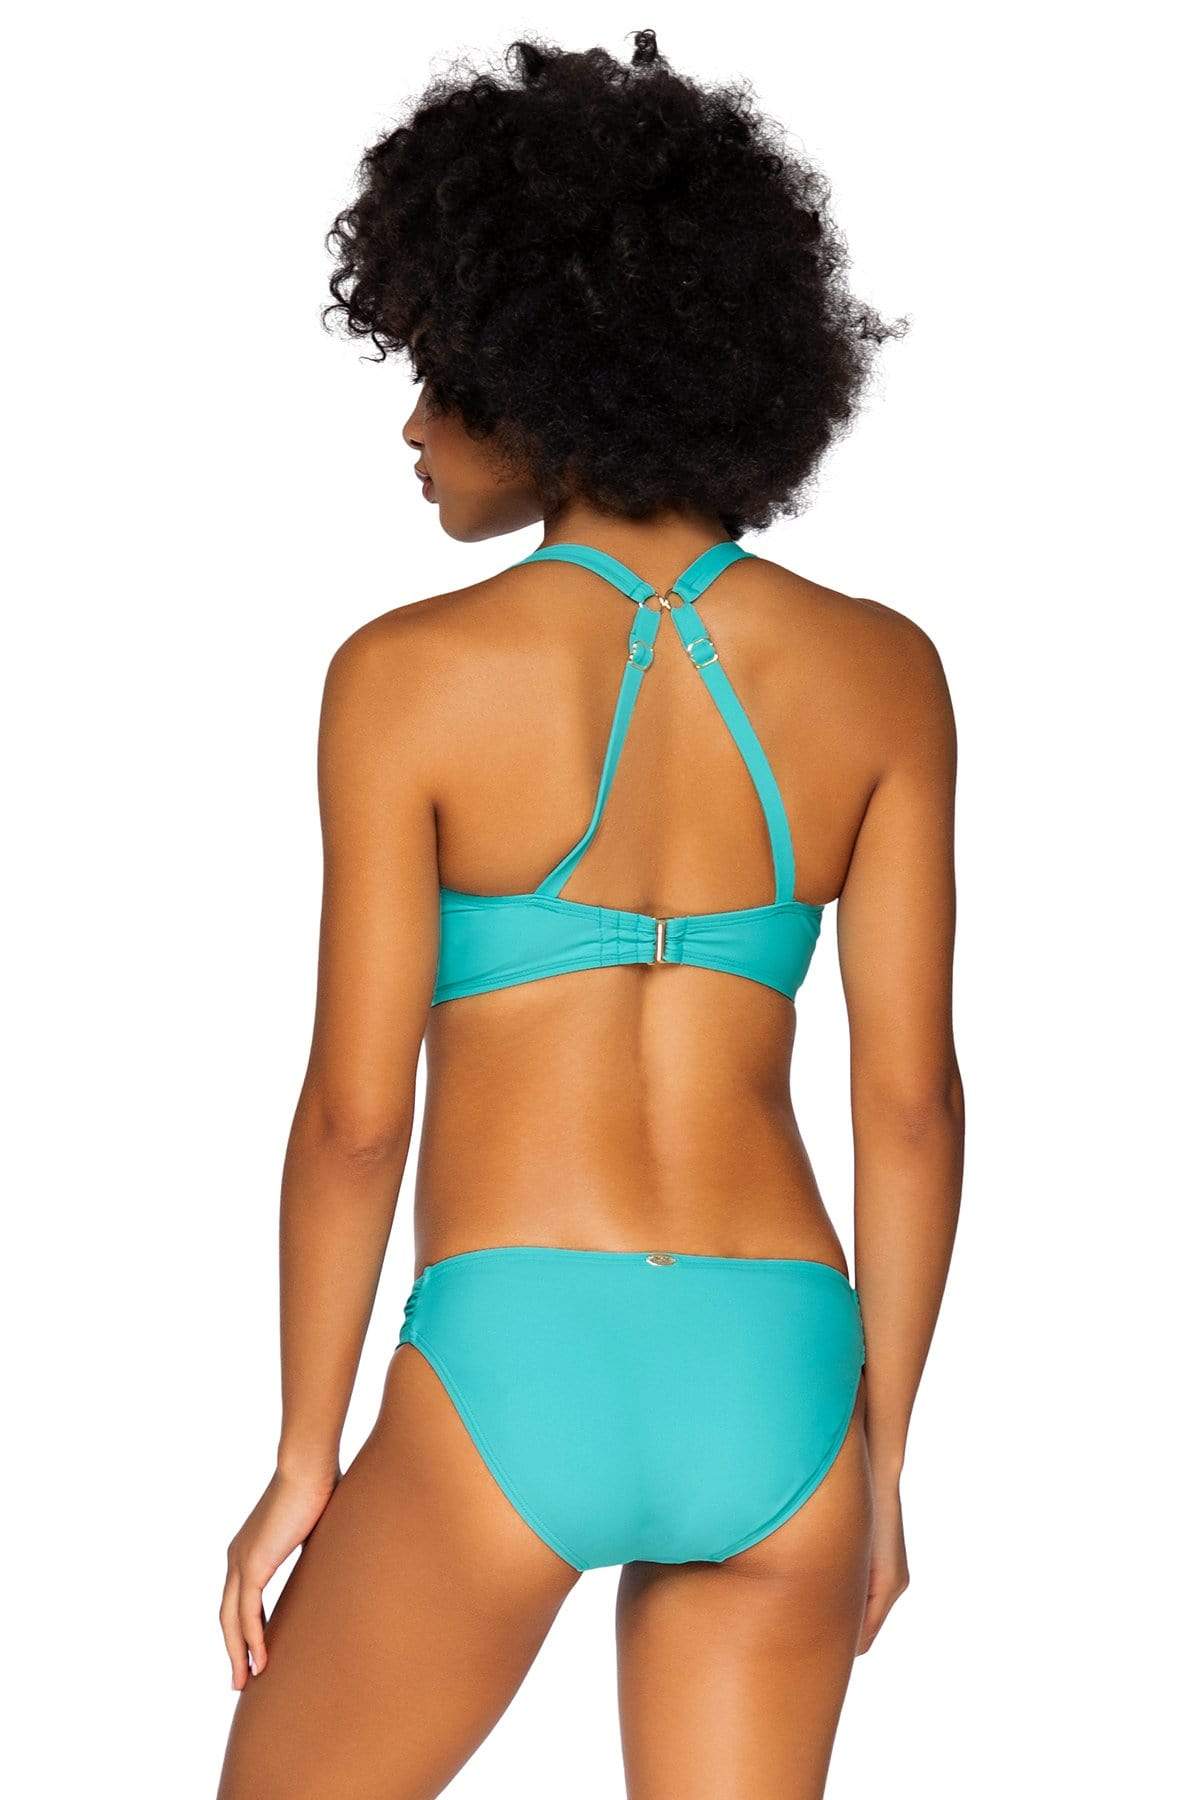 Bestswimwear -  Sunsets Seaside Aqua Taylor Bralette